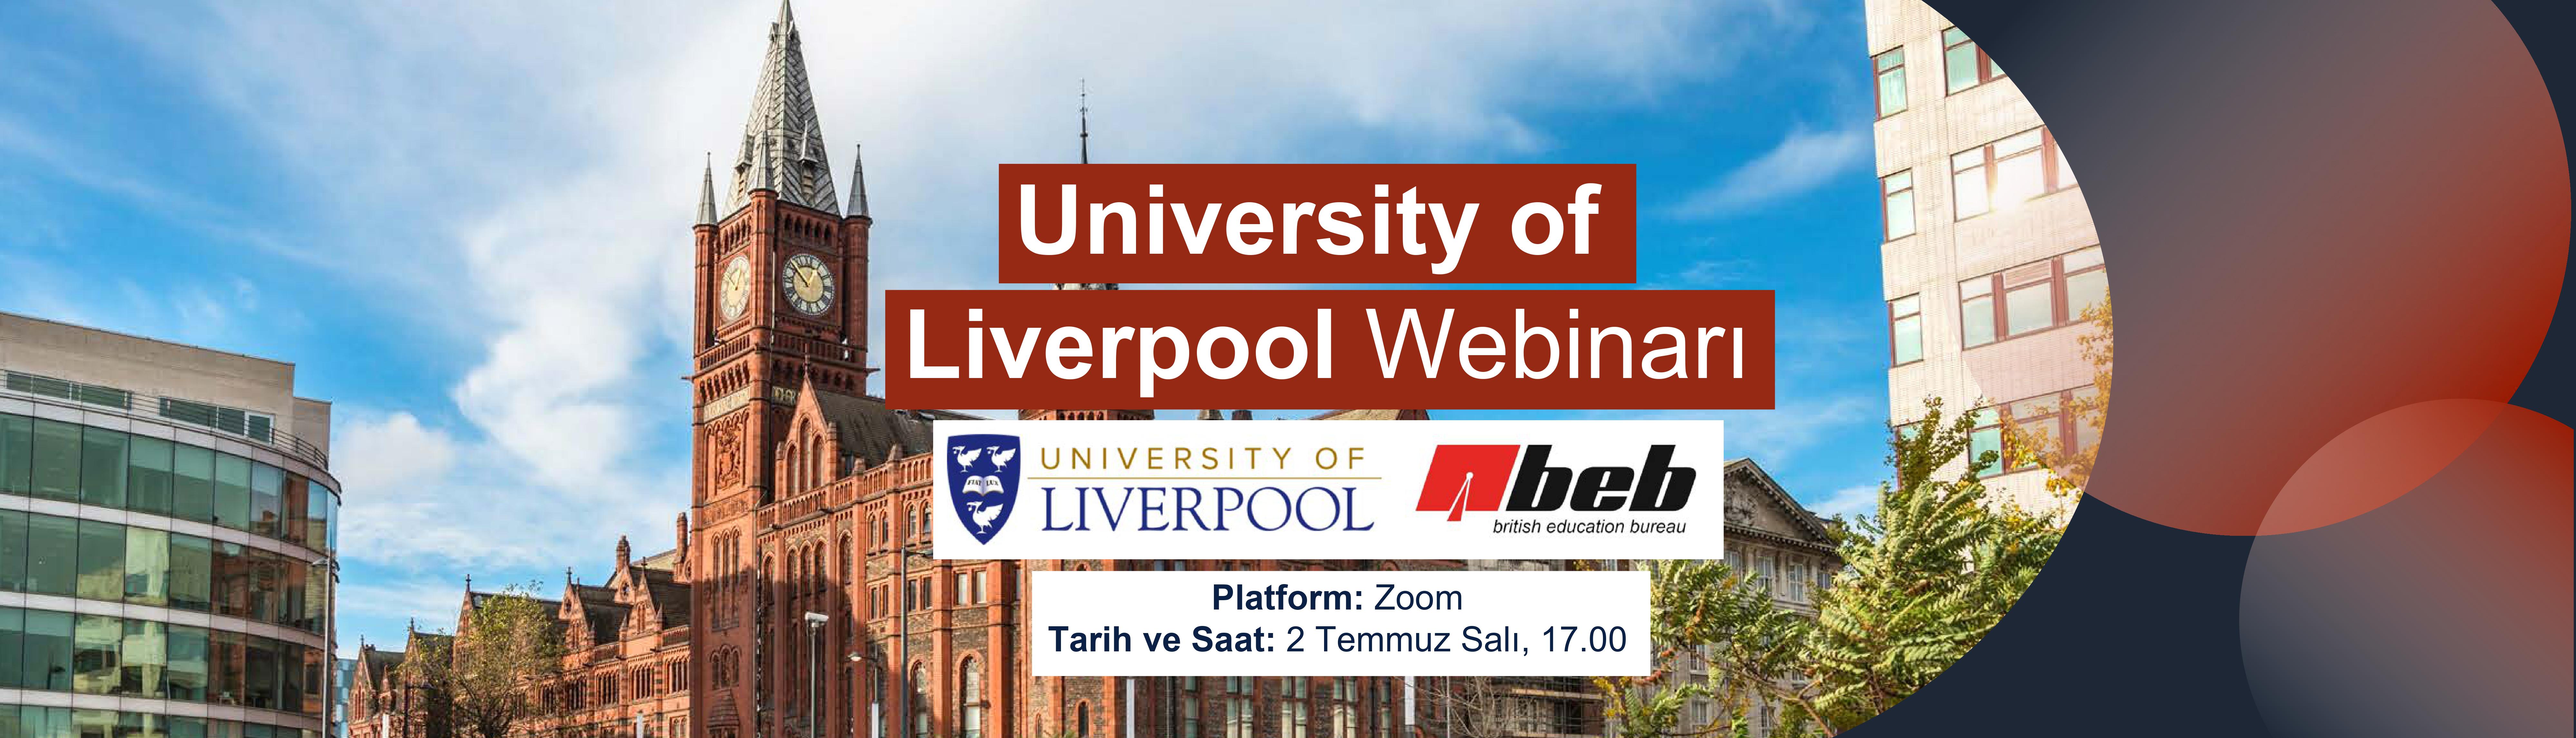 University-of-Liverpool-Webinar-Yayini---BEB